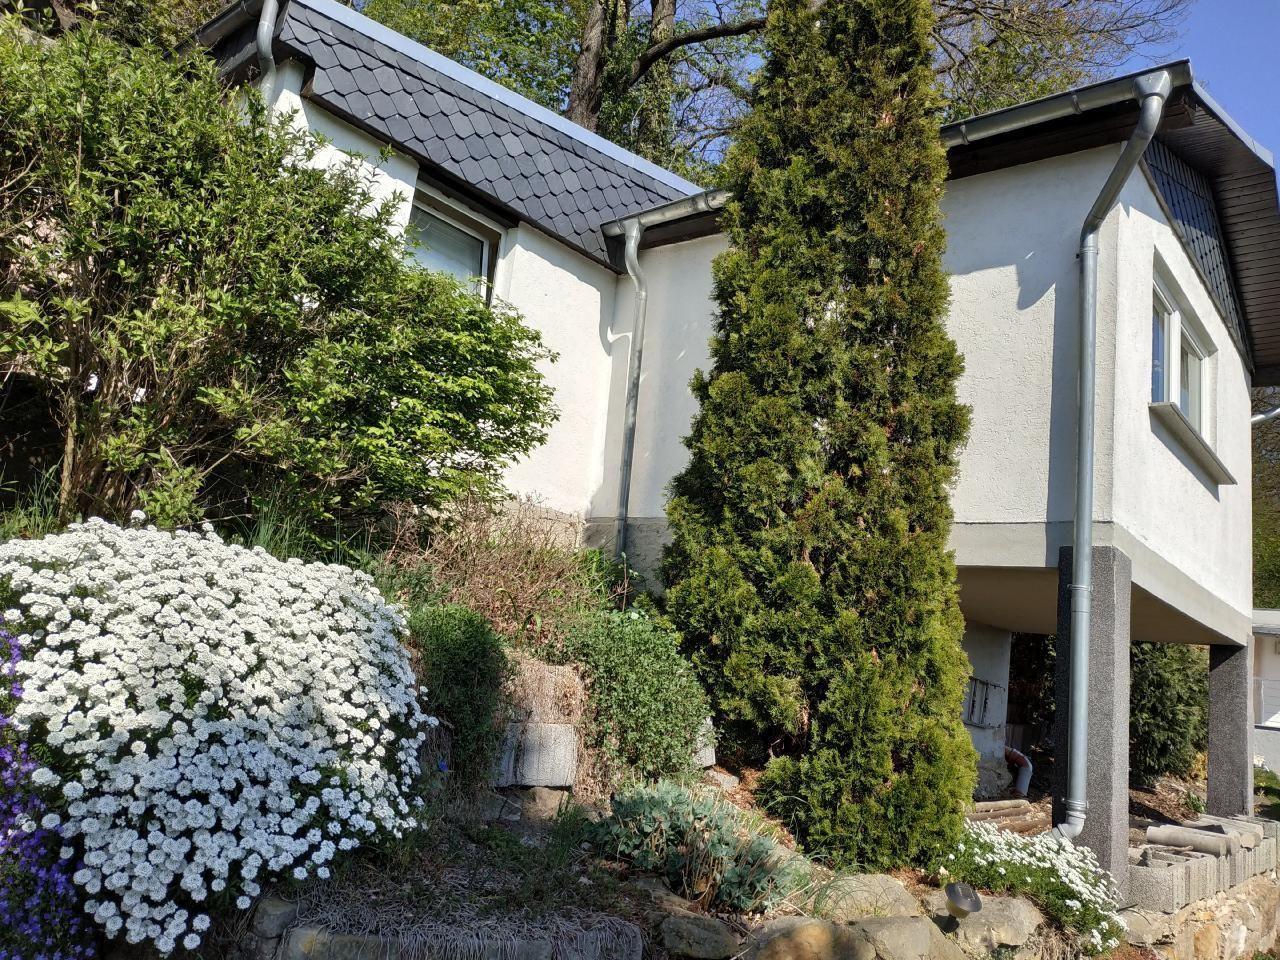 Ferienhaus in Pirna mit Schöner Terrasse  in der SÃ¤chsische Schweiz